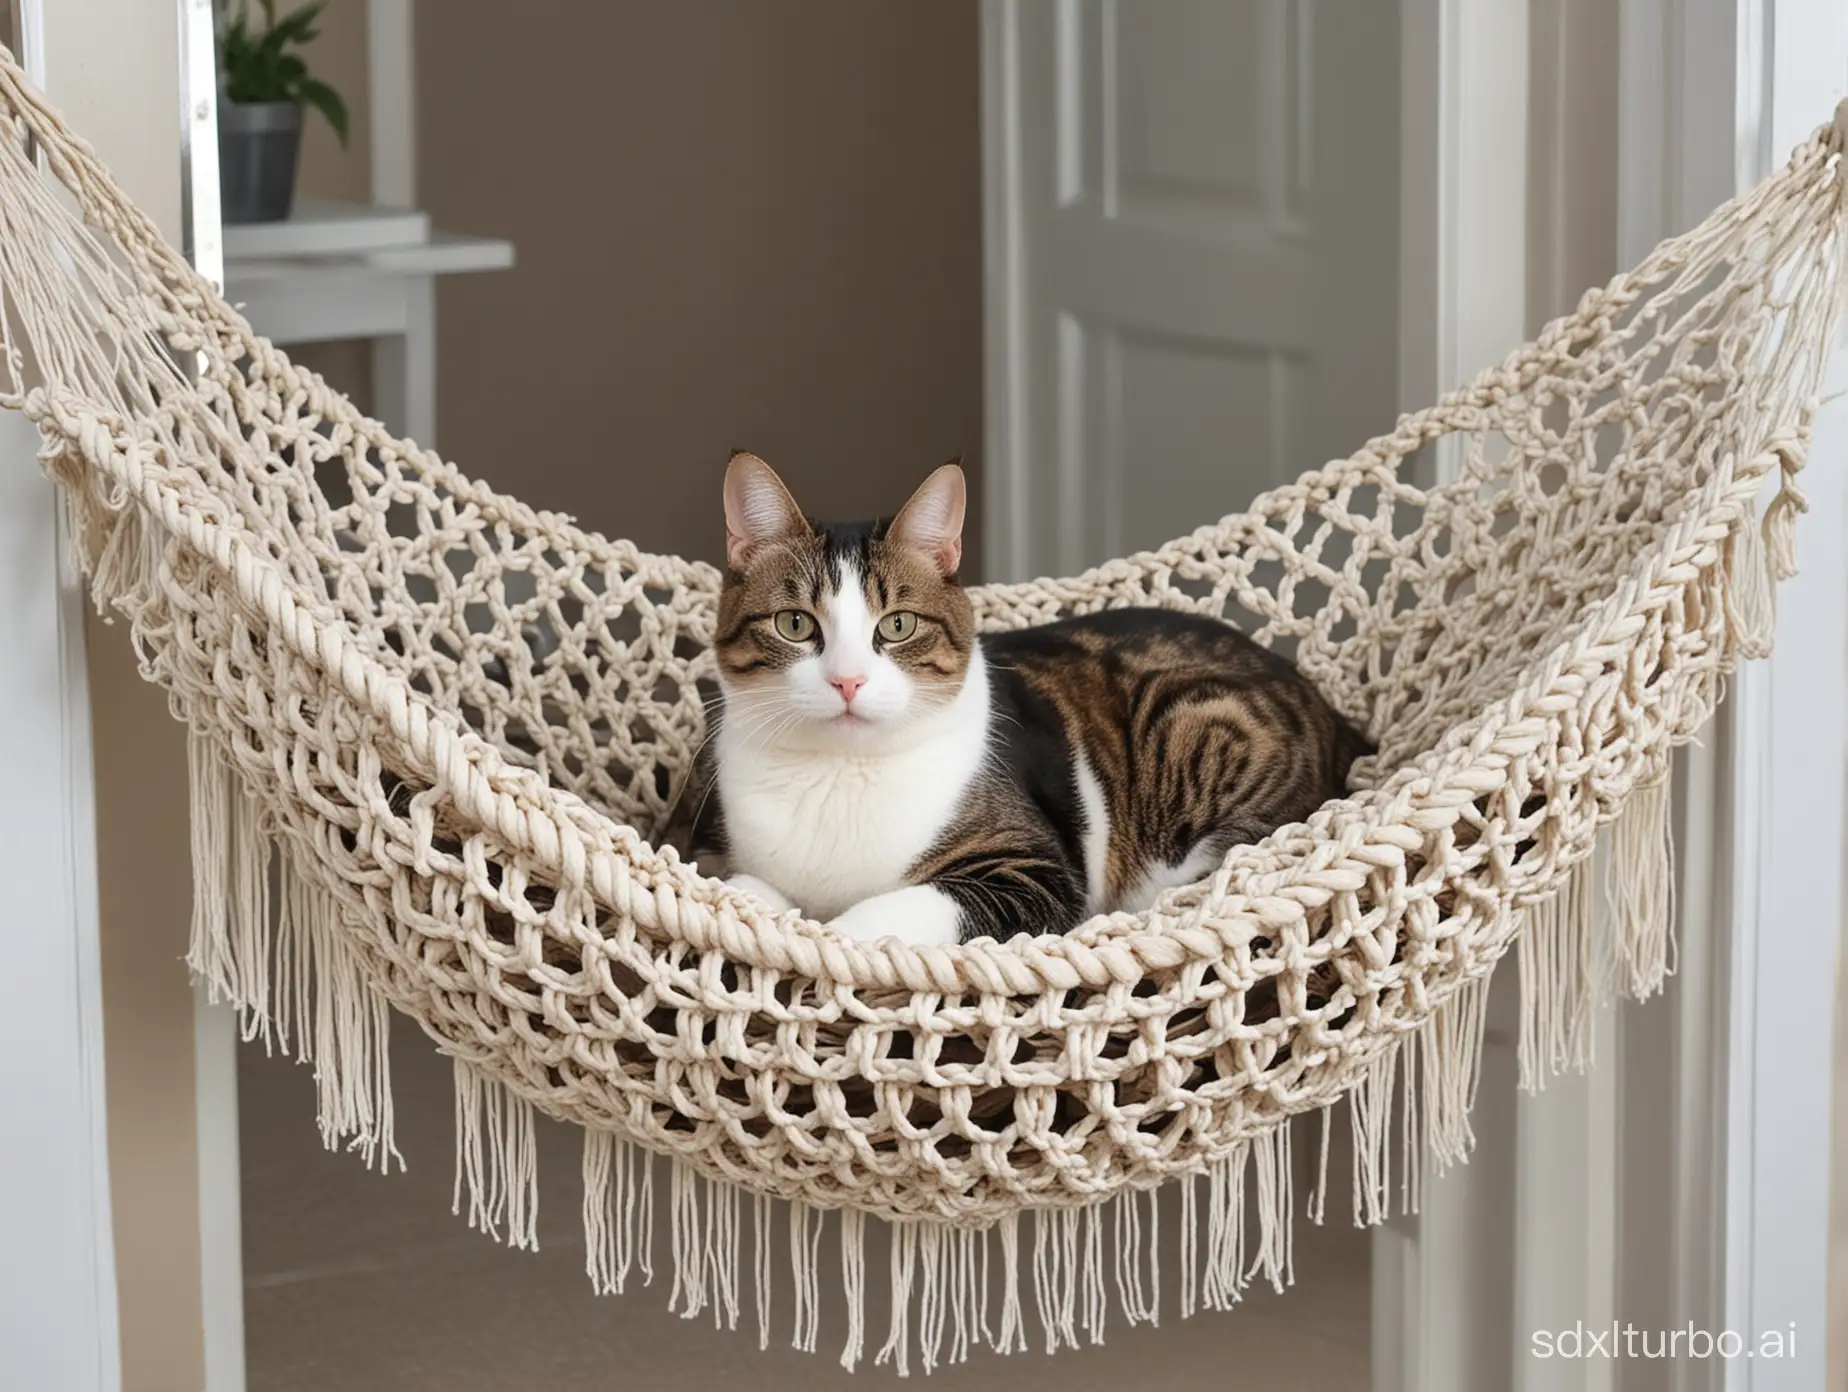 Cat chilling on macrame cat hammock front door bird